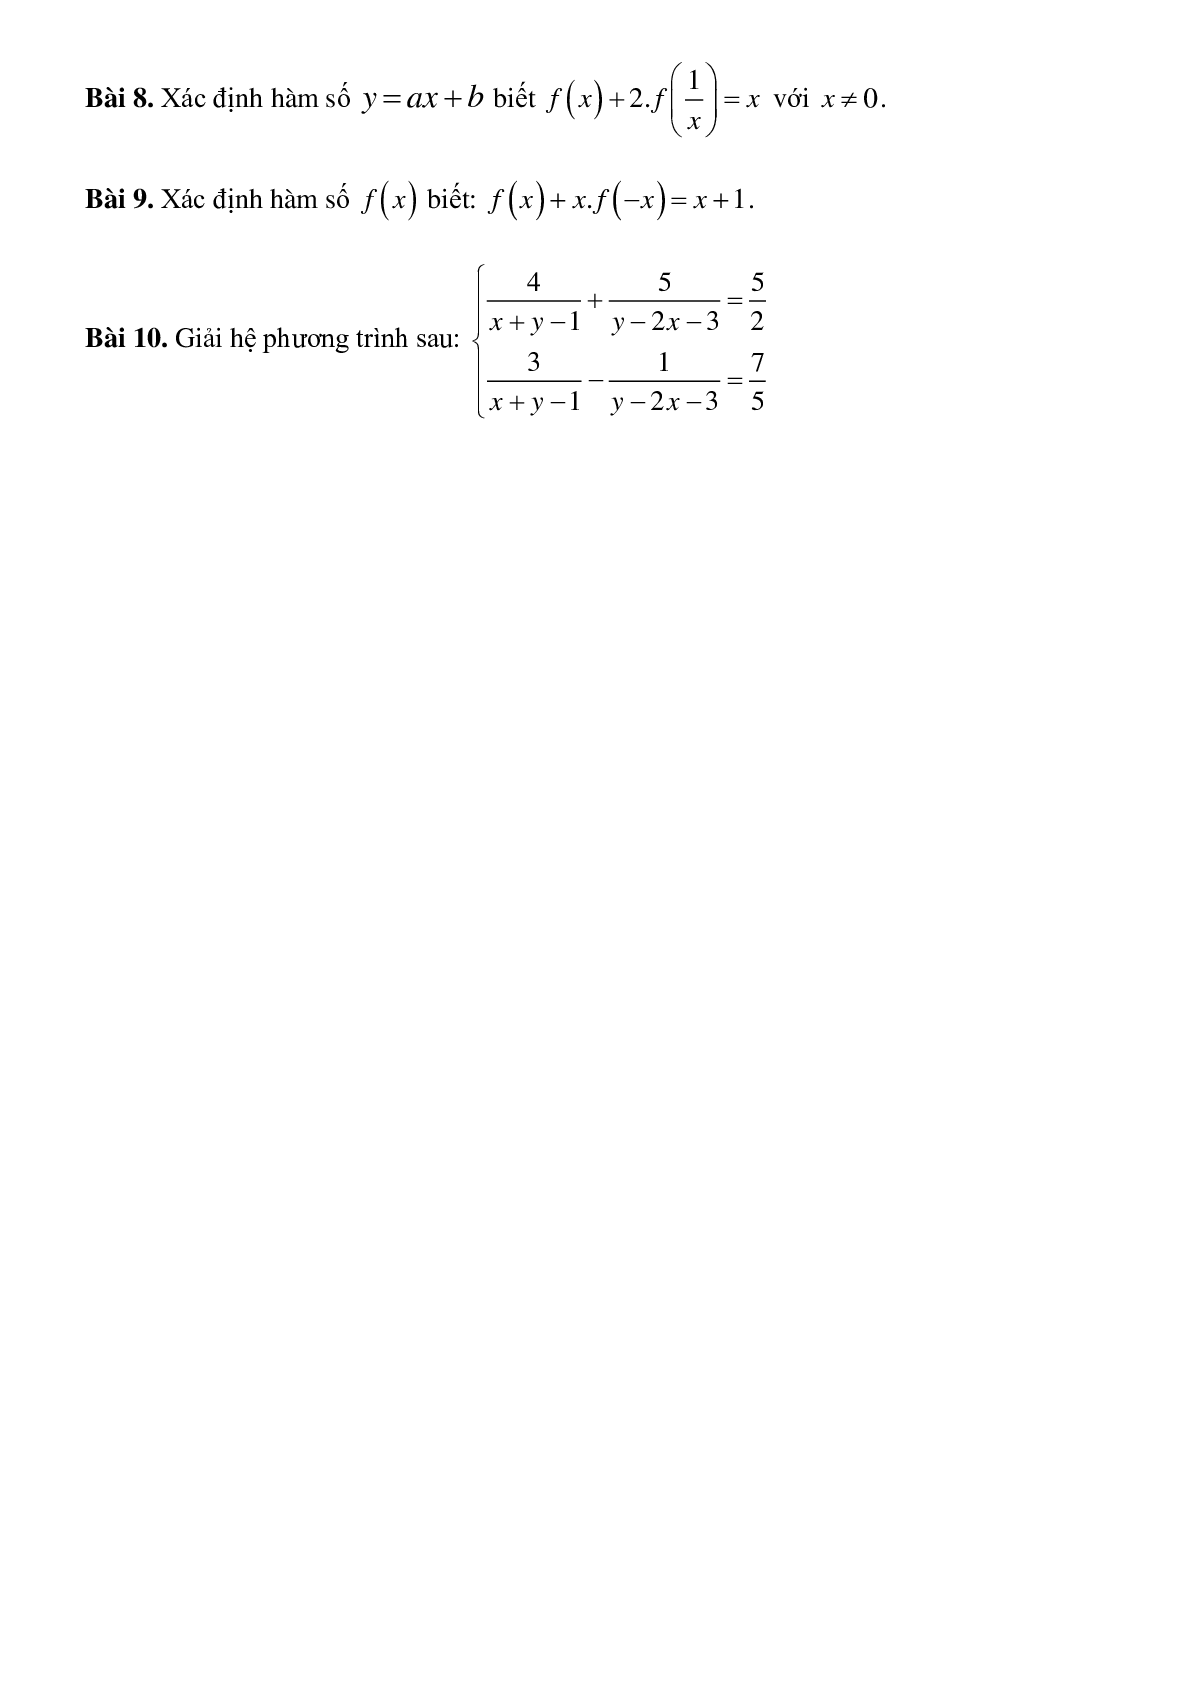 Bài tập về Giải hệ phương trình bằng phương pháp đặt ẩn phụ có lời giải (trang 4)